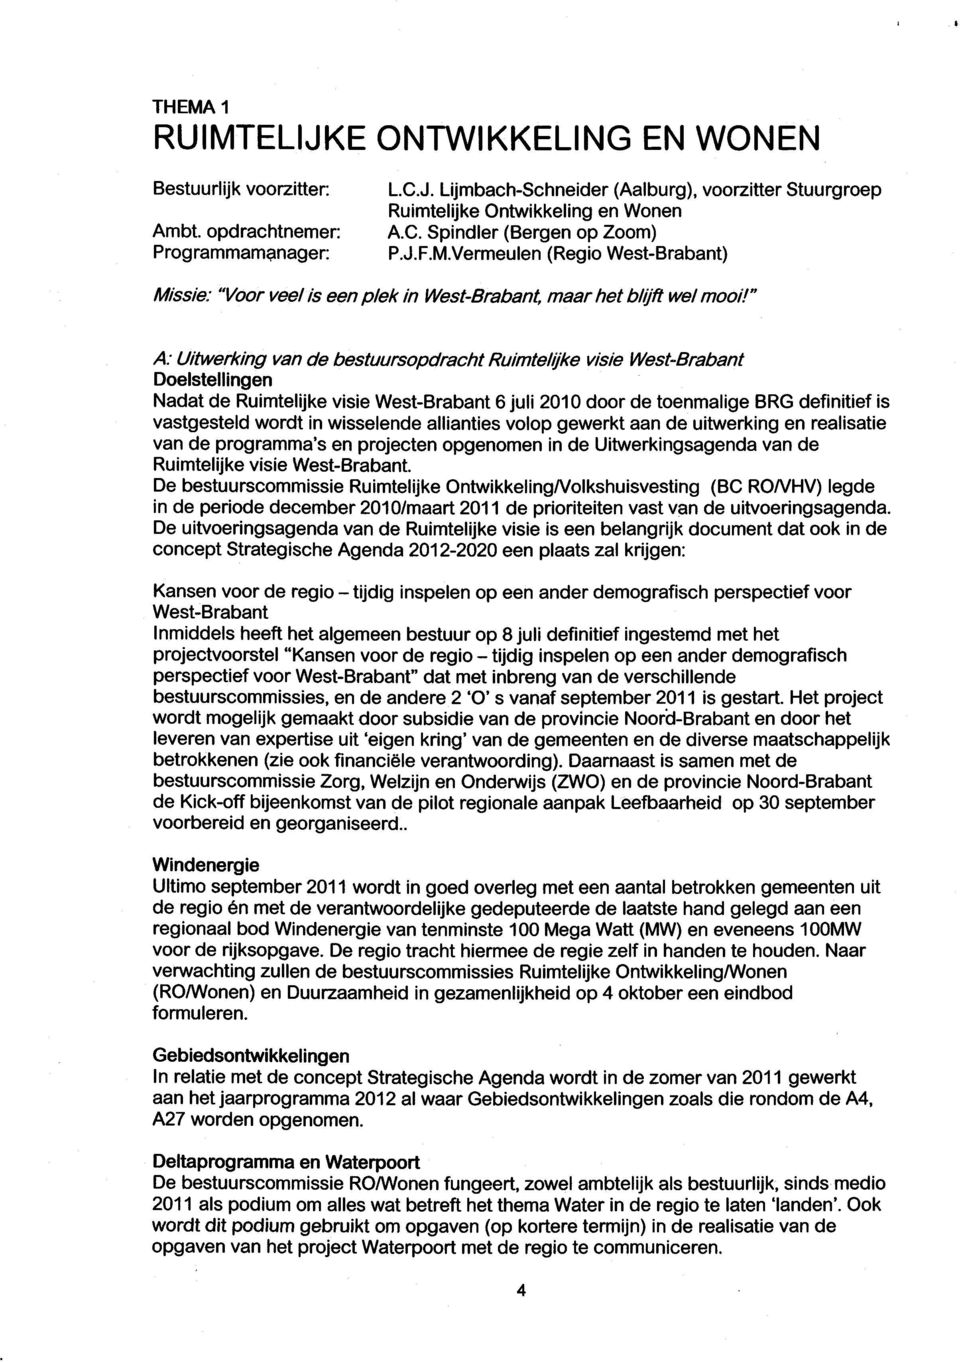 " A: Uitwerking van de bestuursopdracht Ruimtelijke visie West-Brabant Doelstellingen Nadat de Ruimtelijke visie West-Brabant 6 juli 2010 door de toenmalige BRG definitief is vastgesteld wordt in